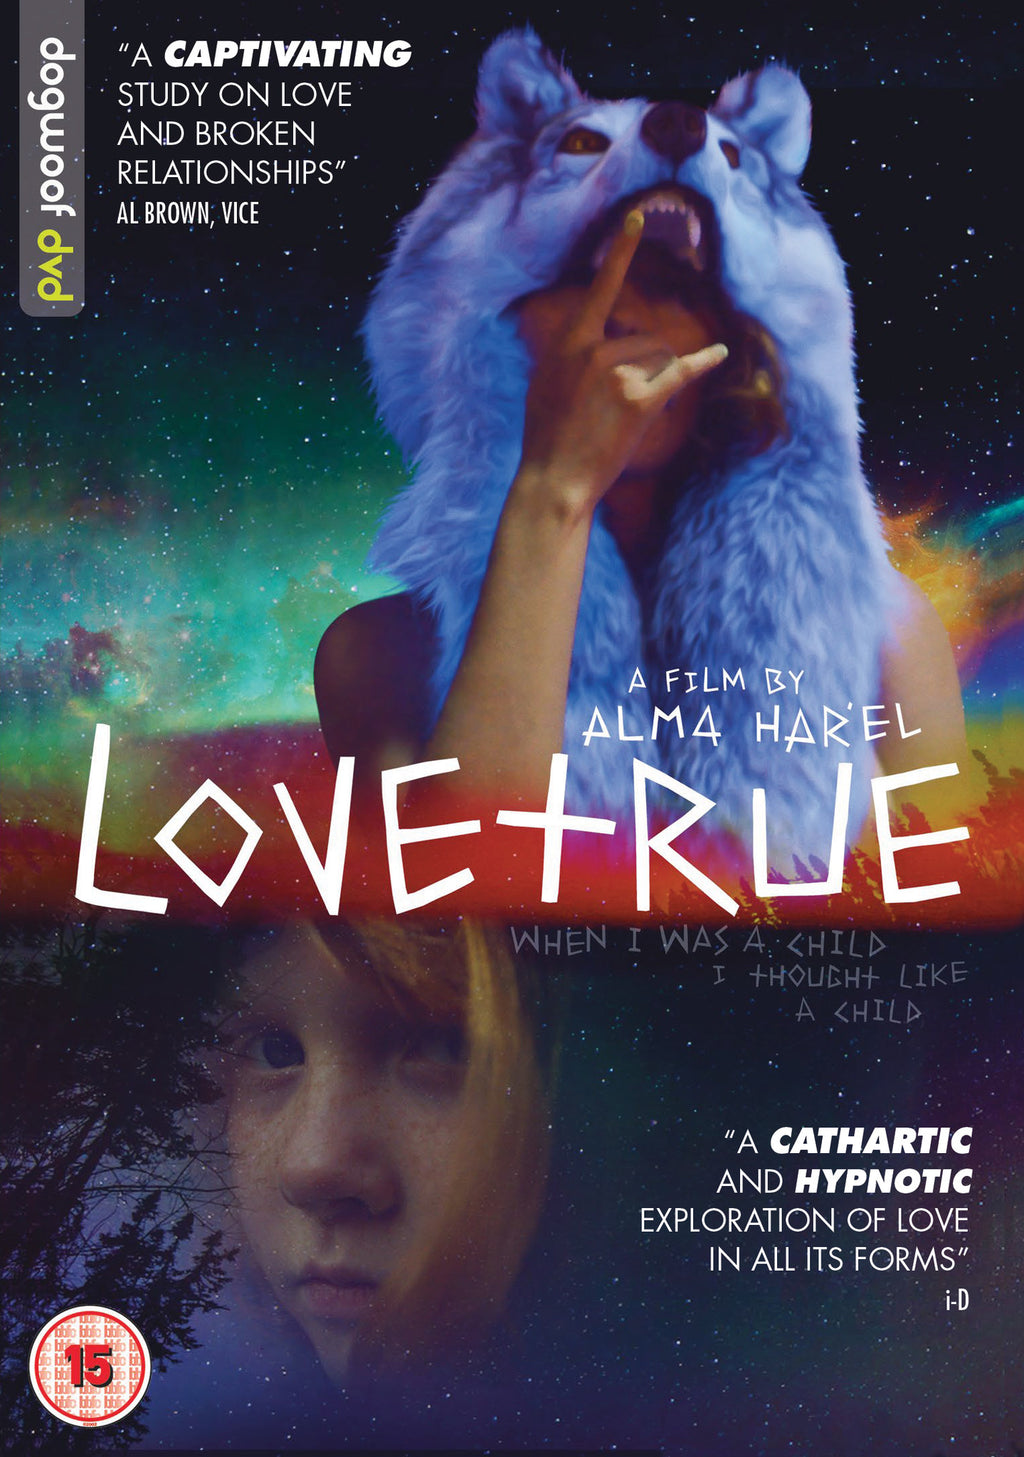 LoveTrue DVD